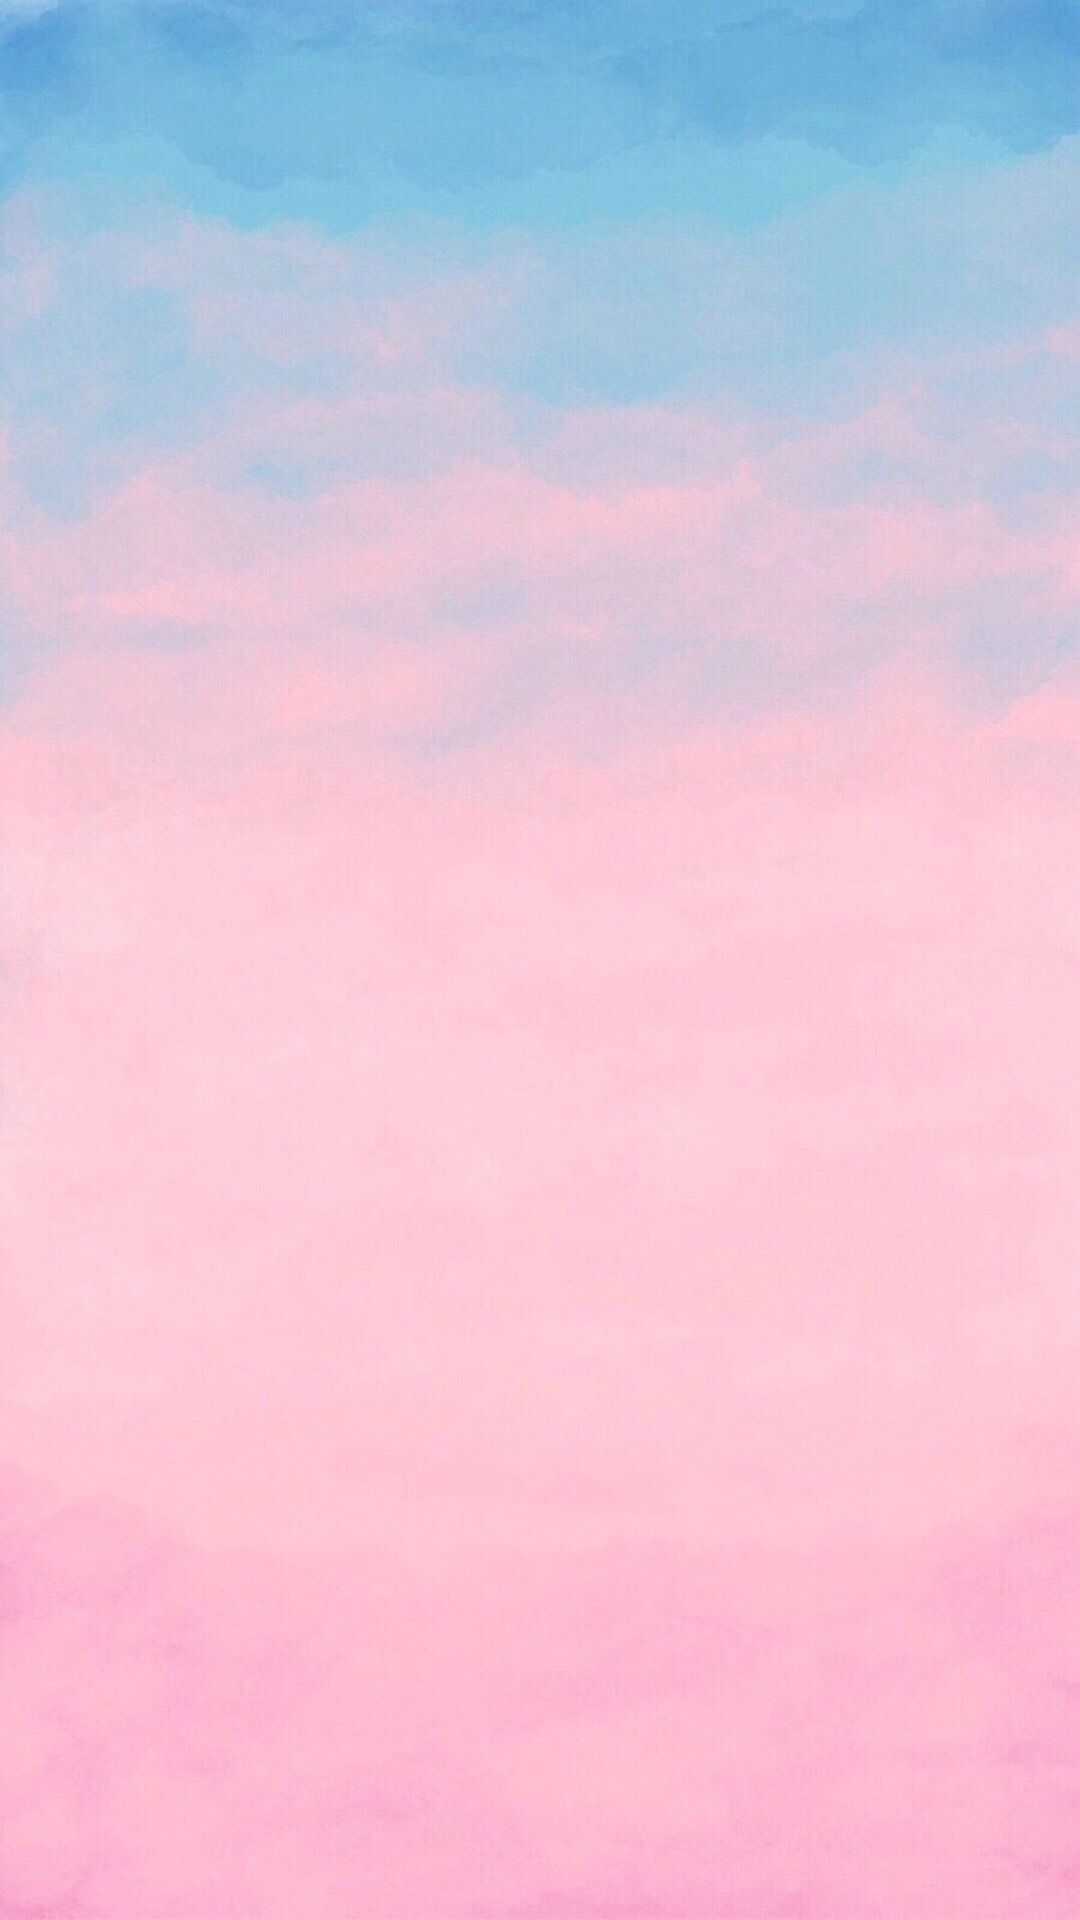 Pink and blue background. Fundos de cor sólida, Fundo de aquarela